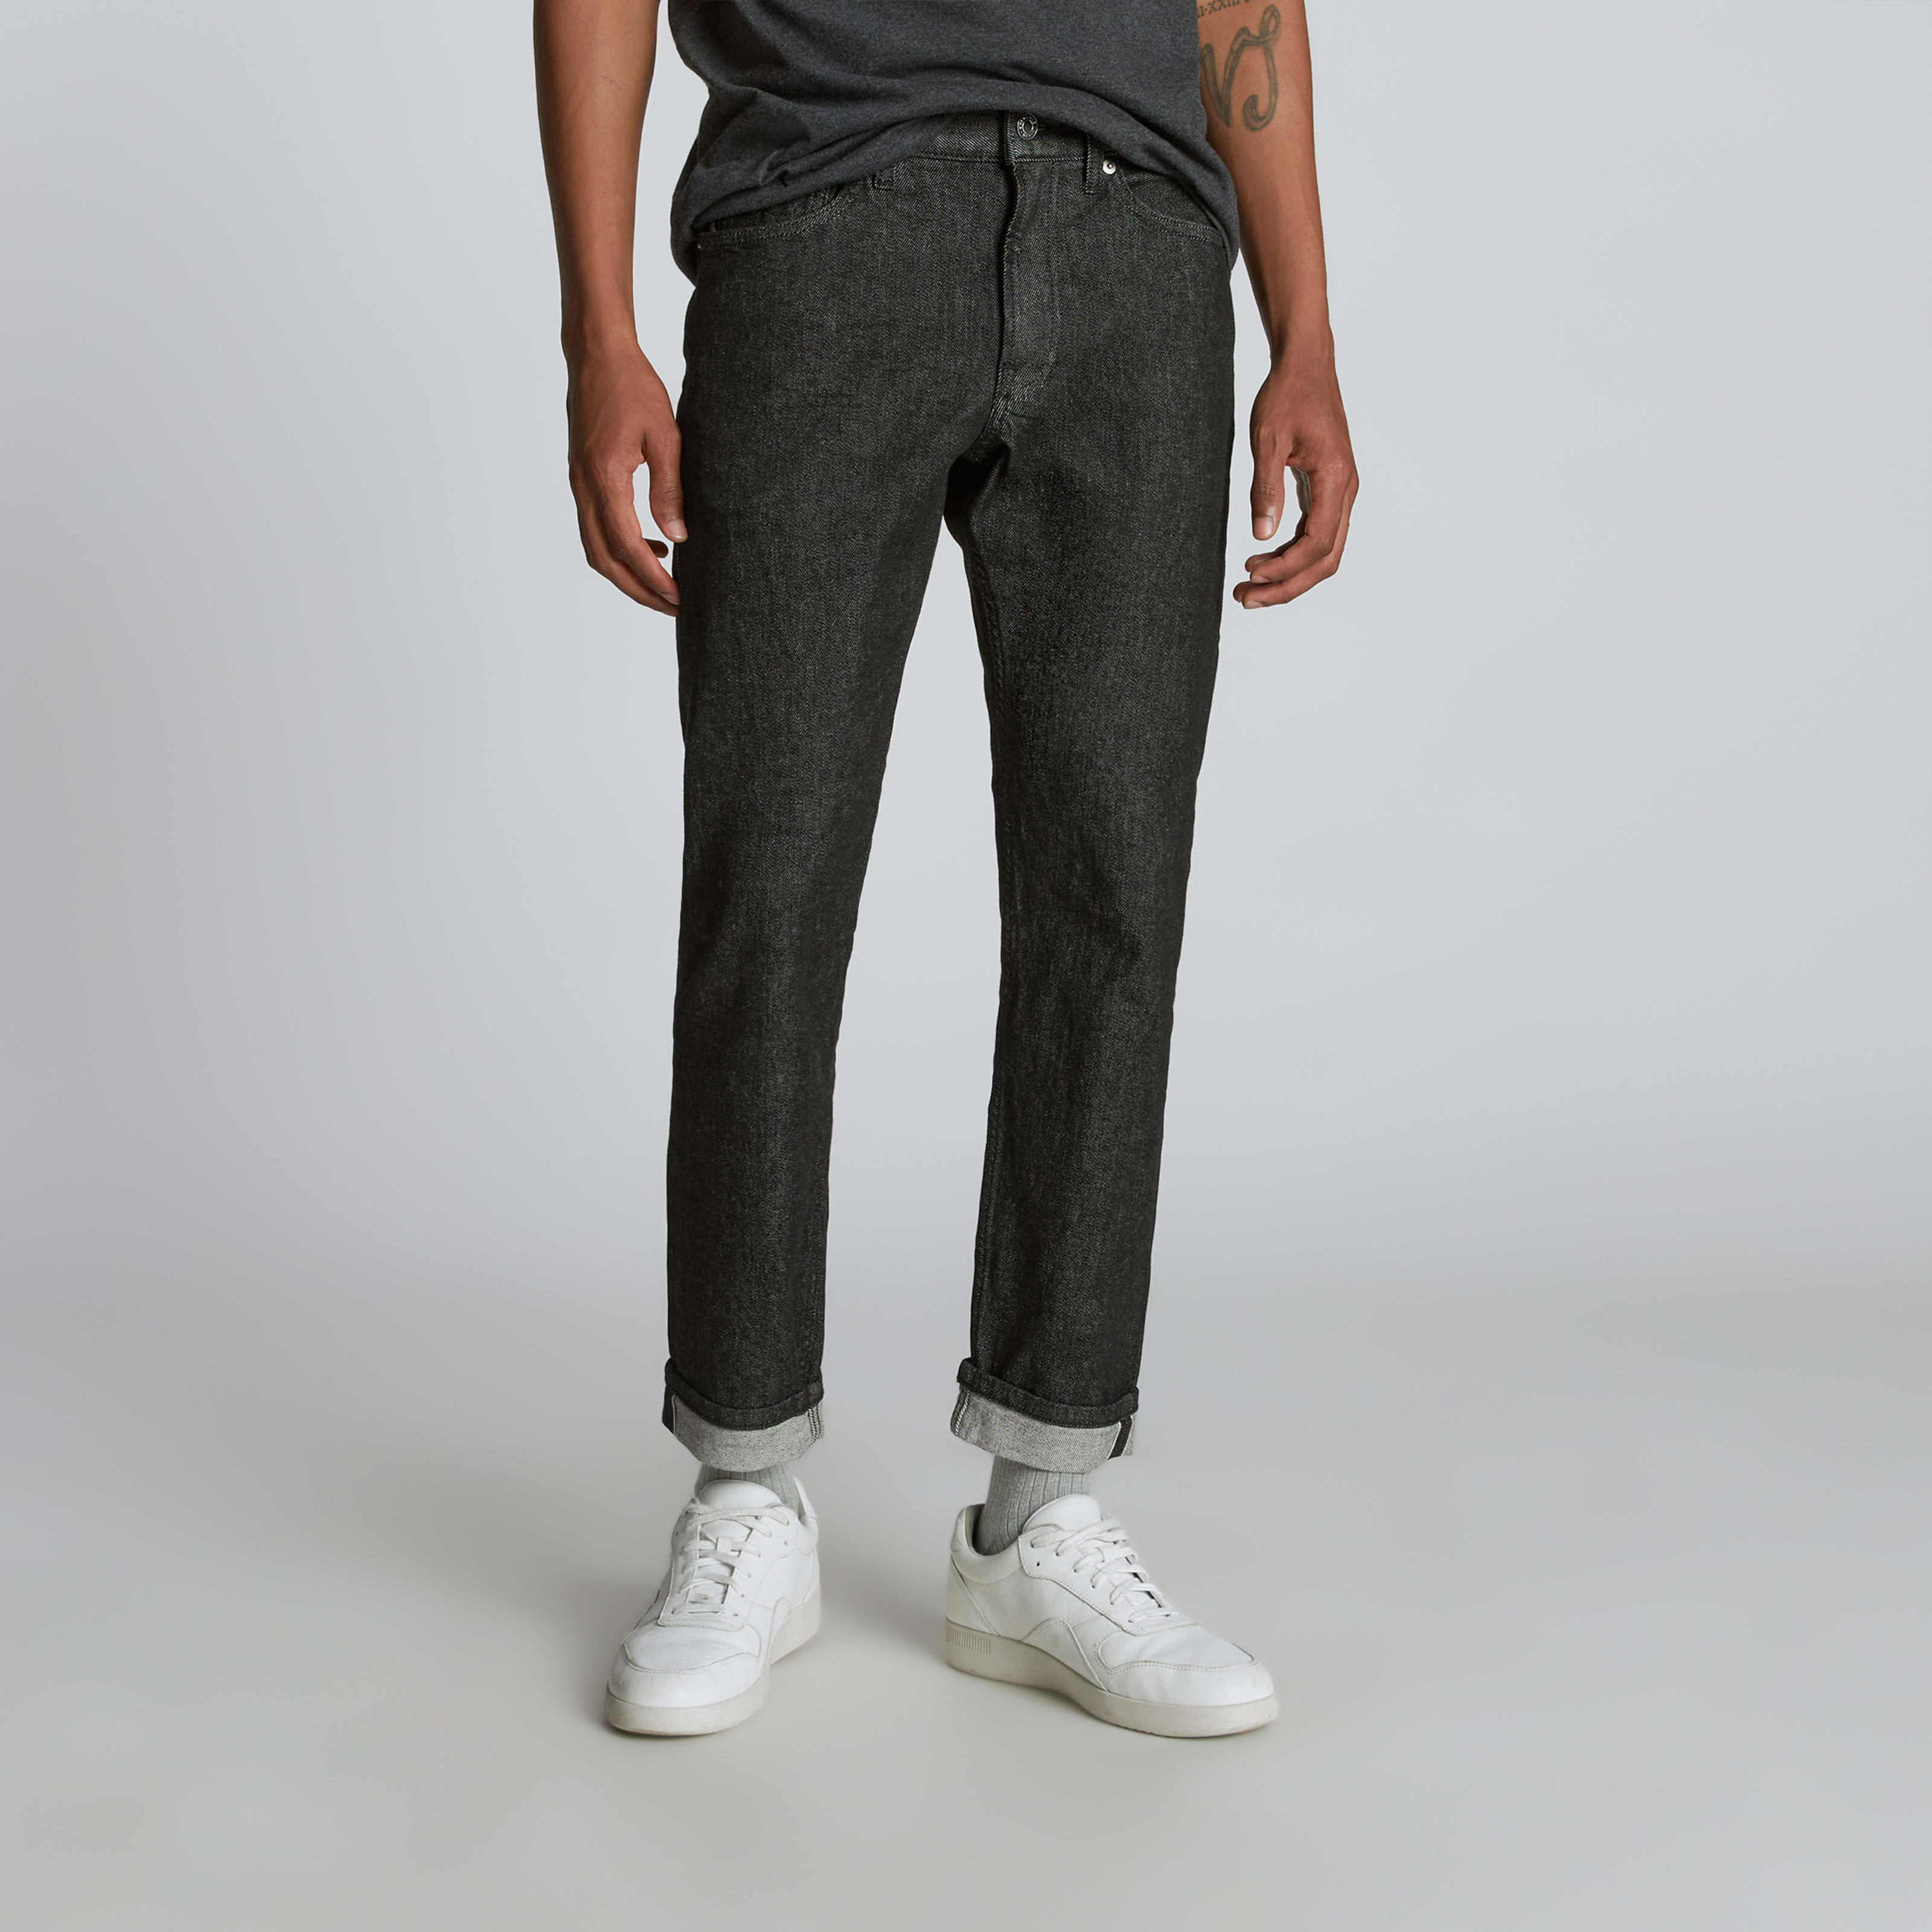 men's selvedge slim fit jean by everlane in black rinse, size 28x28